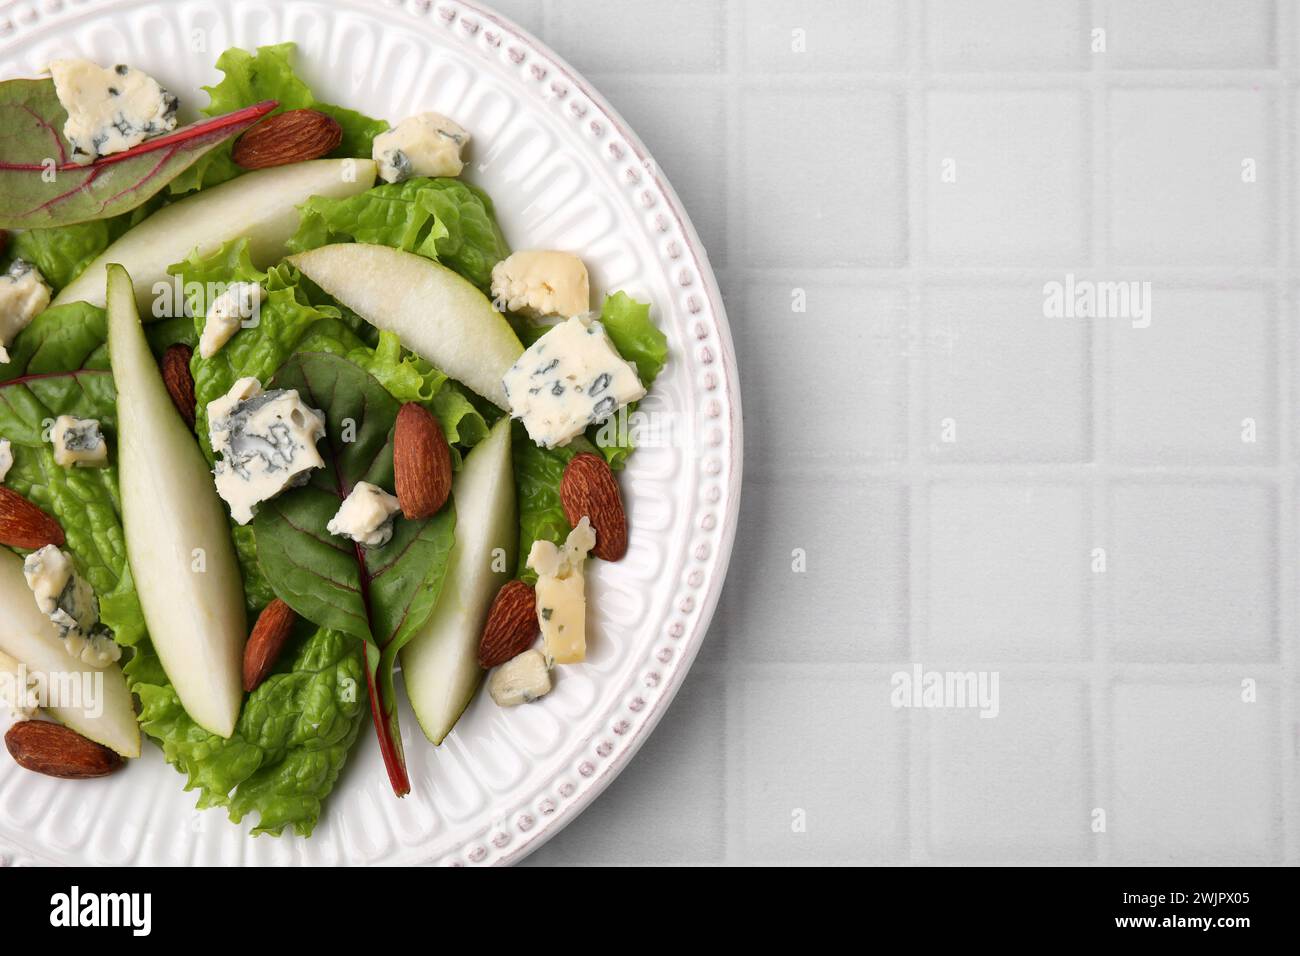 Délicieuse salade de poires sur table carrelée blanche, vue de dessus. Espace pour le texte Banque D'Images